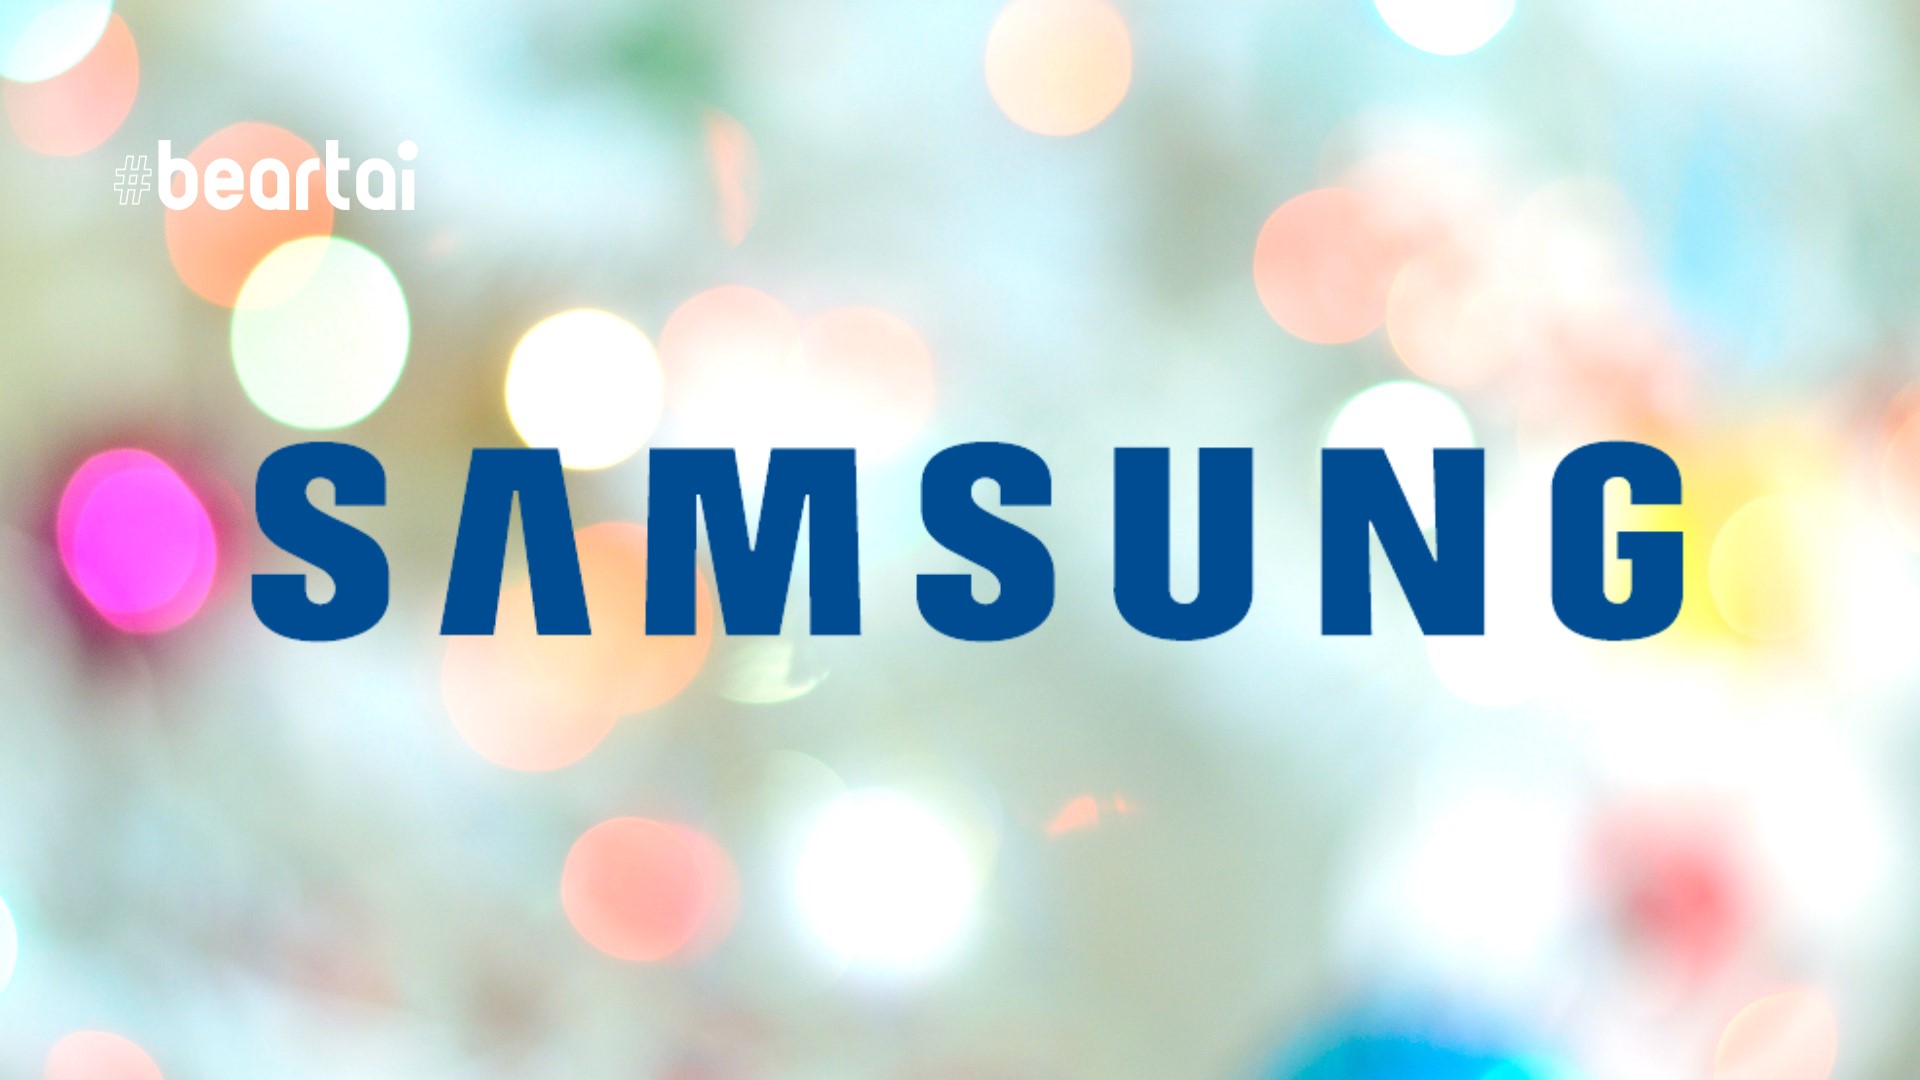 ไม่จริง! Samsung ปฏิเสธข่าวย้ายสายการผลิตจอคอมพิวเตอร์ส่วนใหญ่จากจีนไปยังเวียดนาม